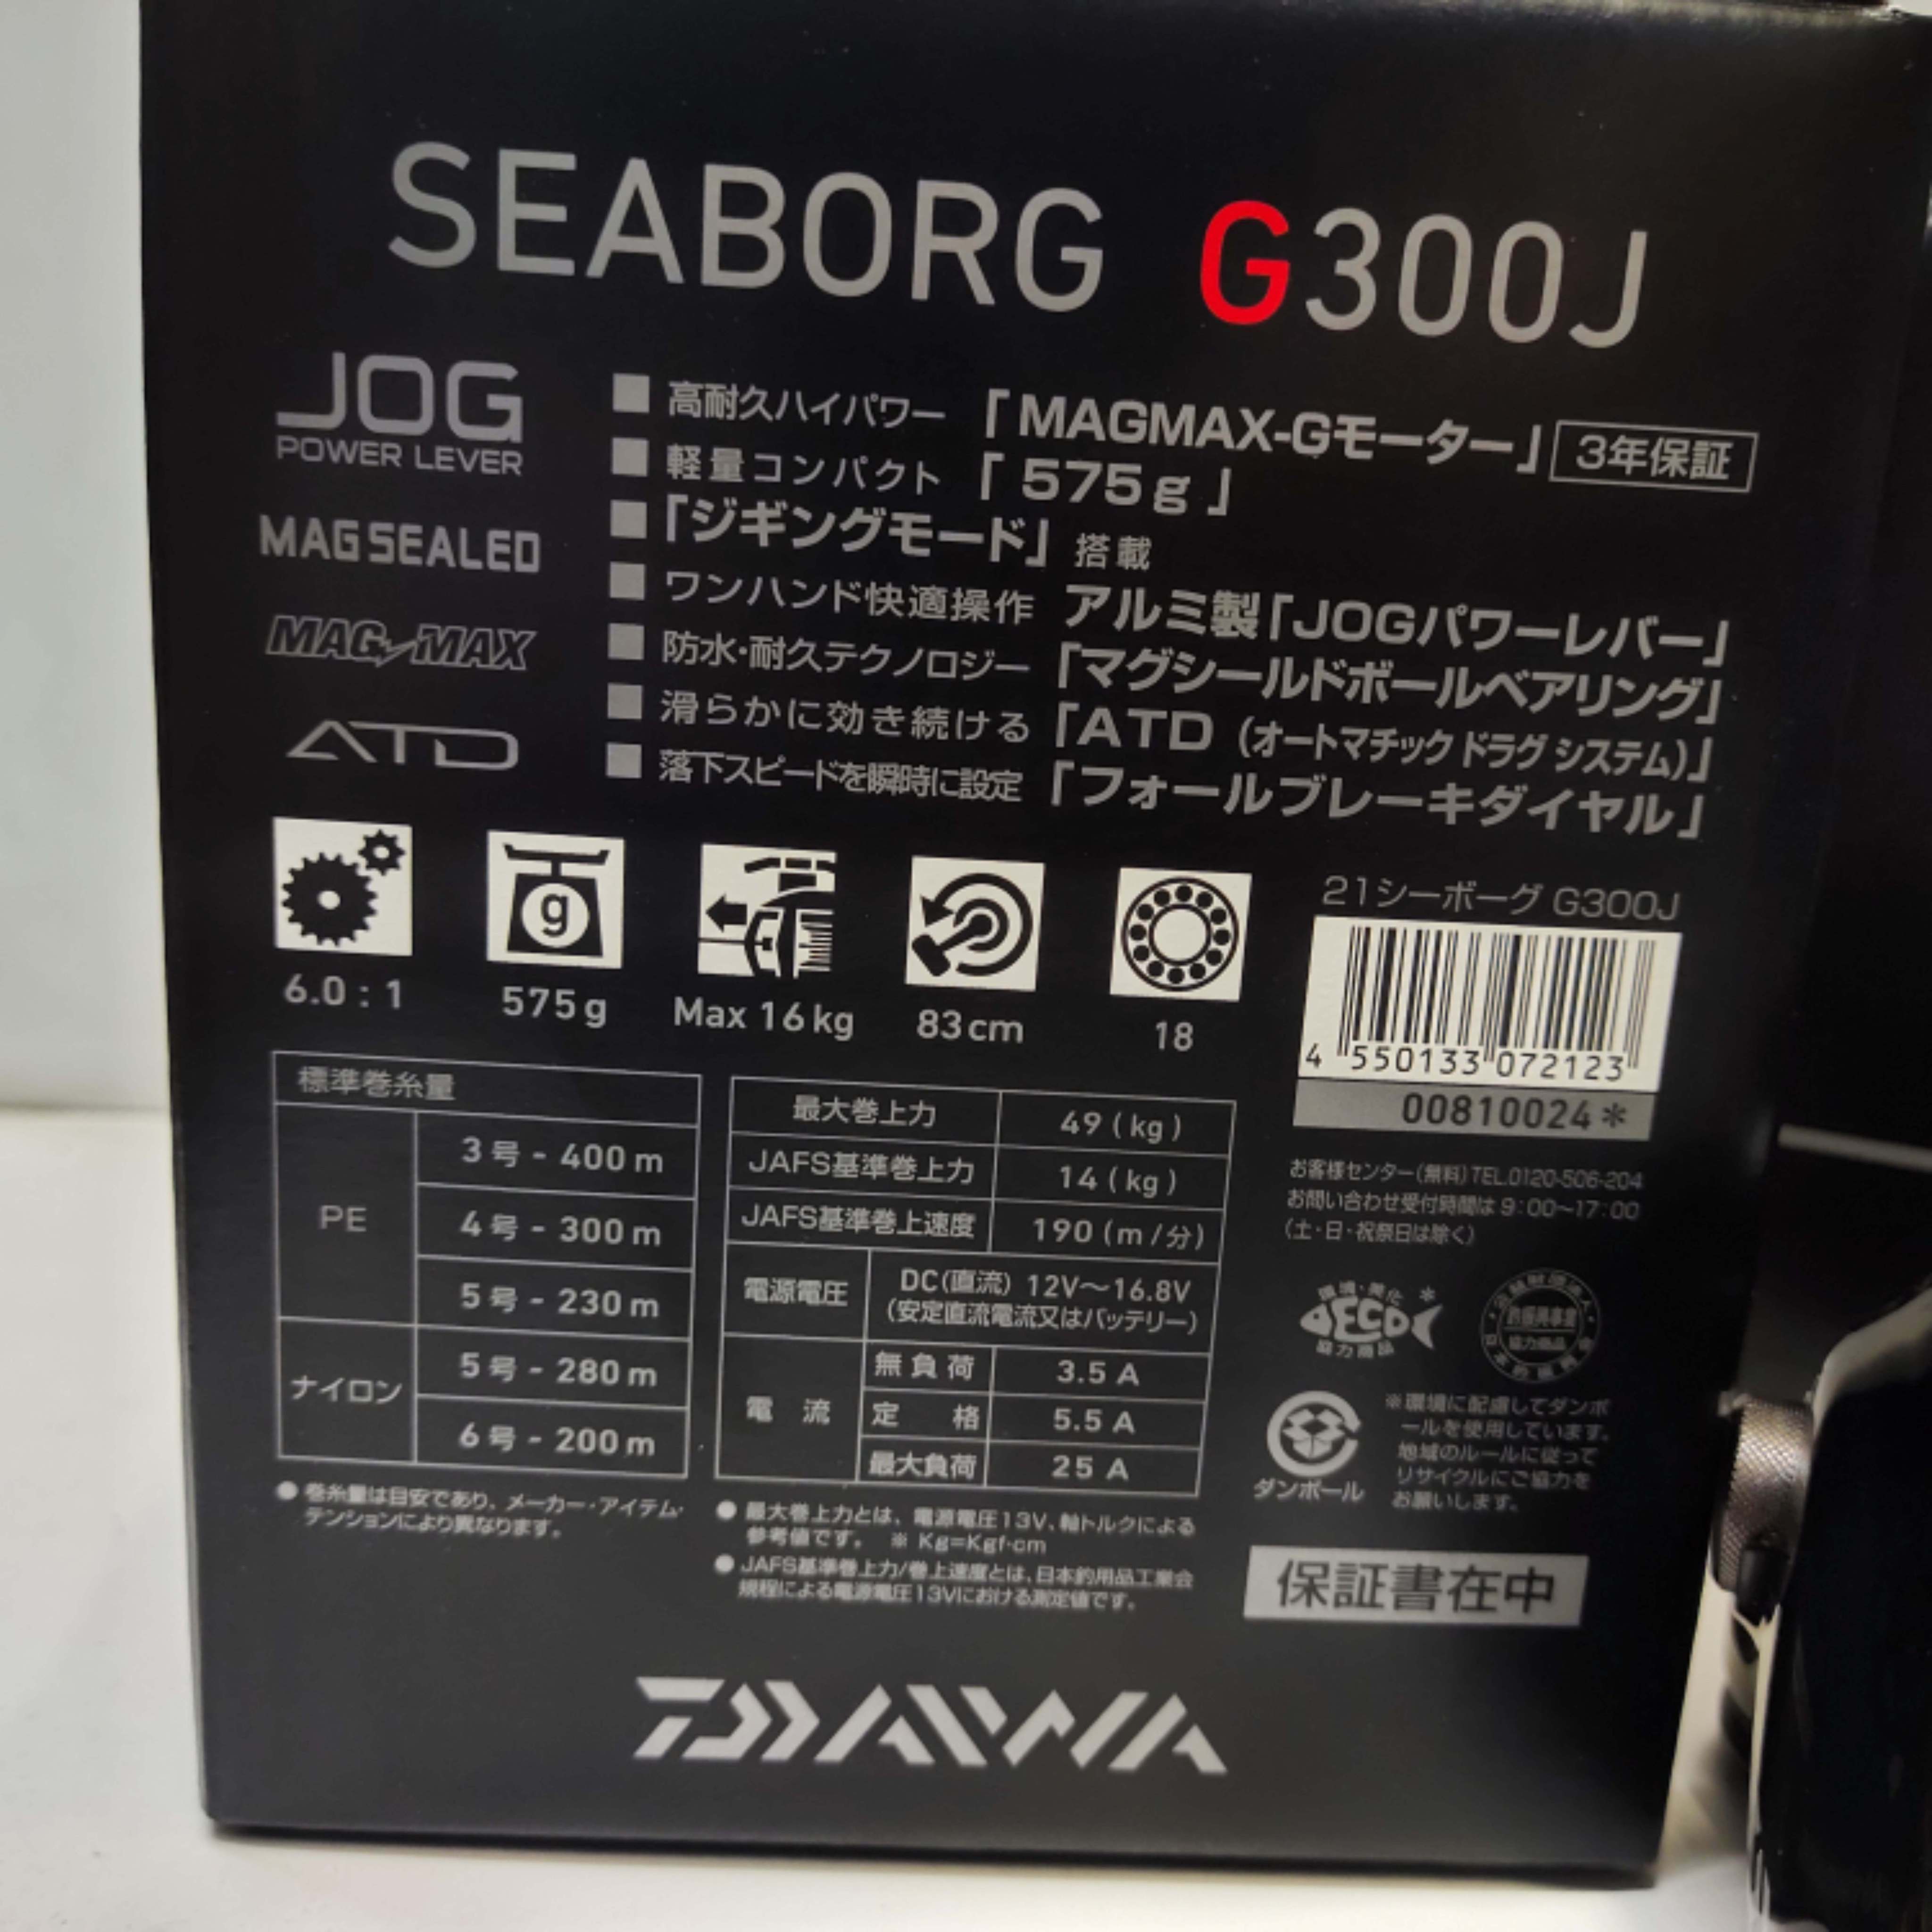 Daiwa Seaborg G300J / Seaborg G400JL electric reel daiwa japan